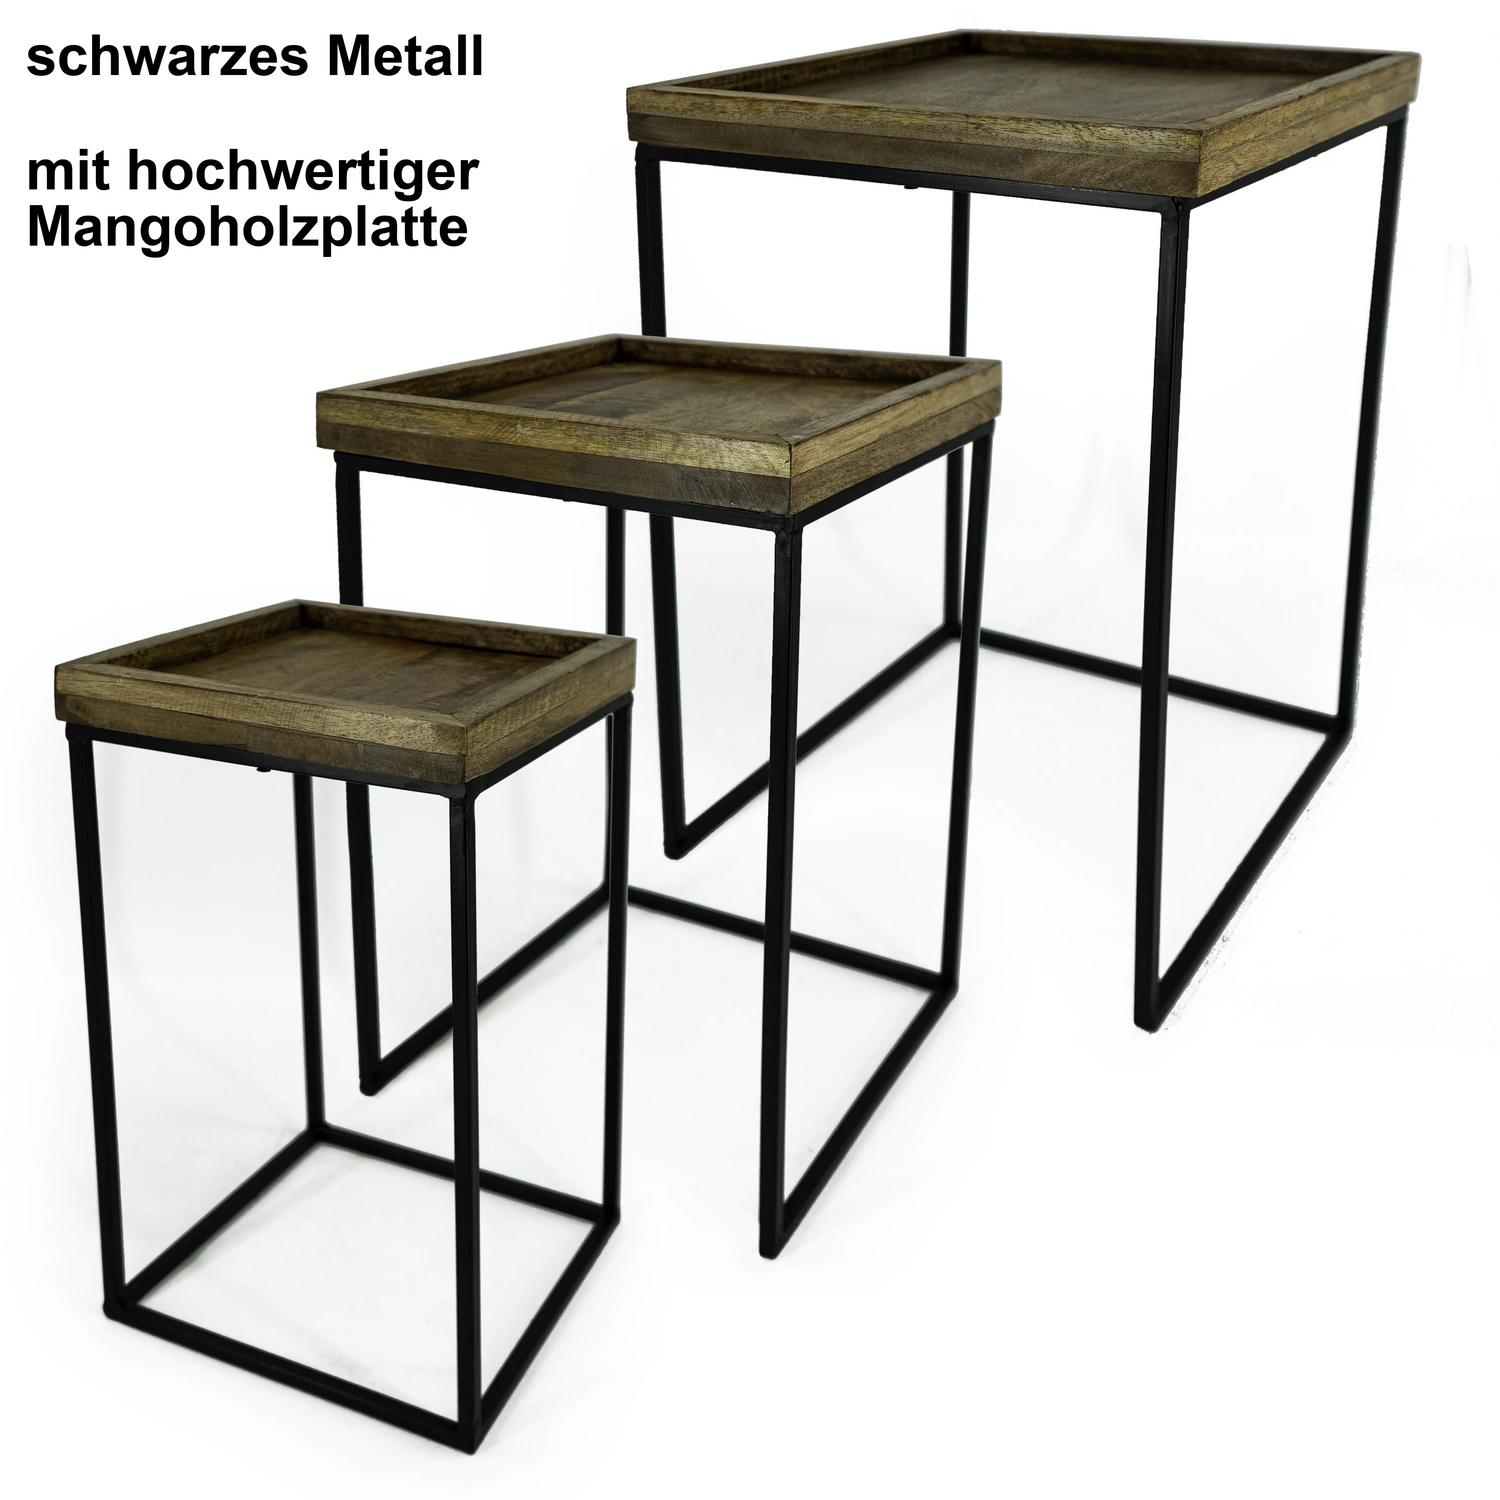 NOOR living Beistelltisch-Set, BxHxL: 33 x 52 x 33 cm, Metall/Mangoholz